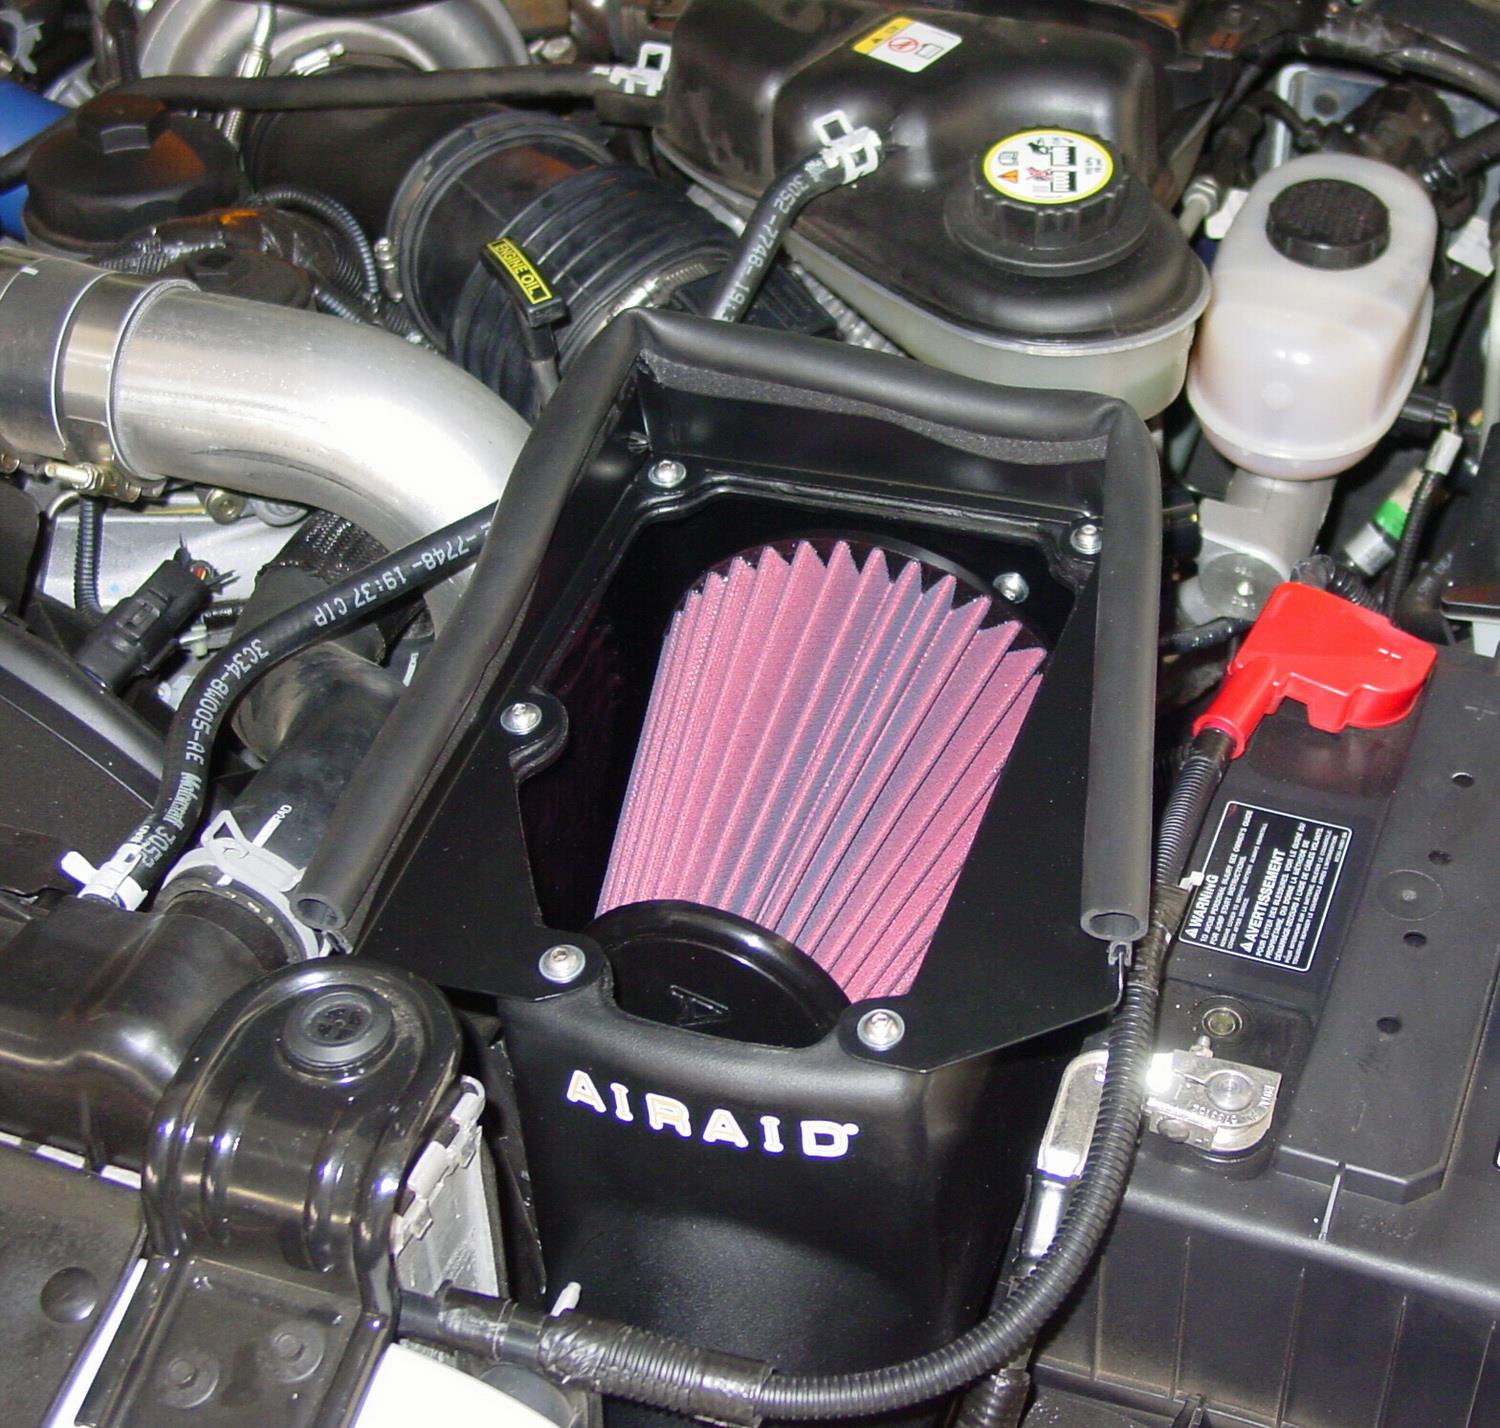 Airaid 250 305 AIRAID MXP Series Cold Air Box Intake System Fits 14 15 Camaro